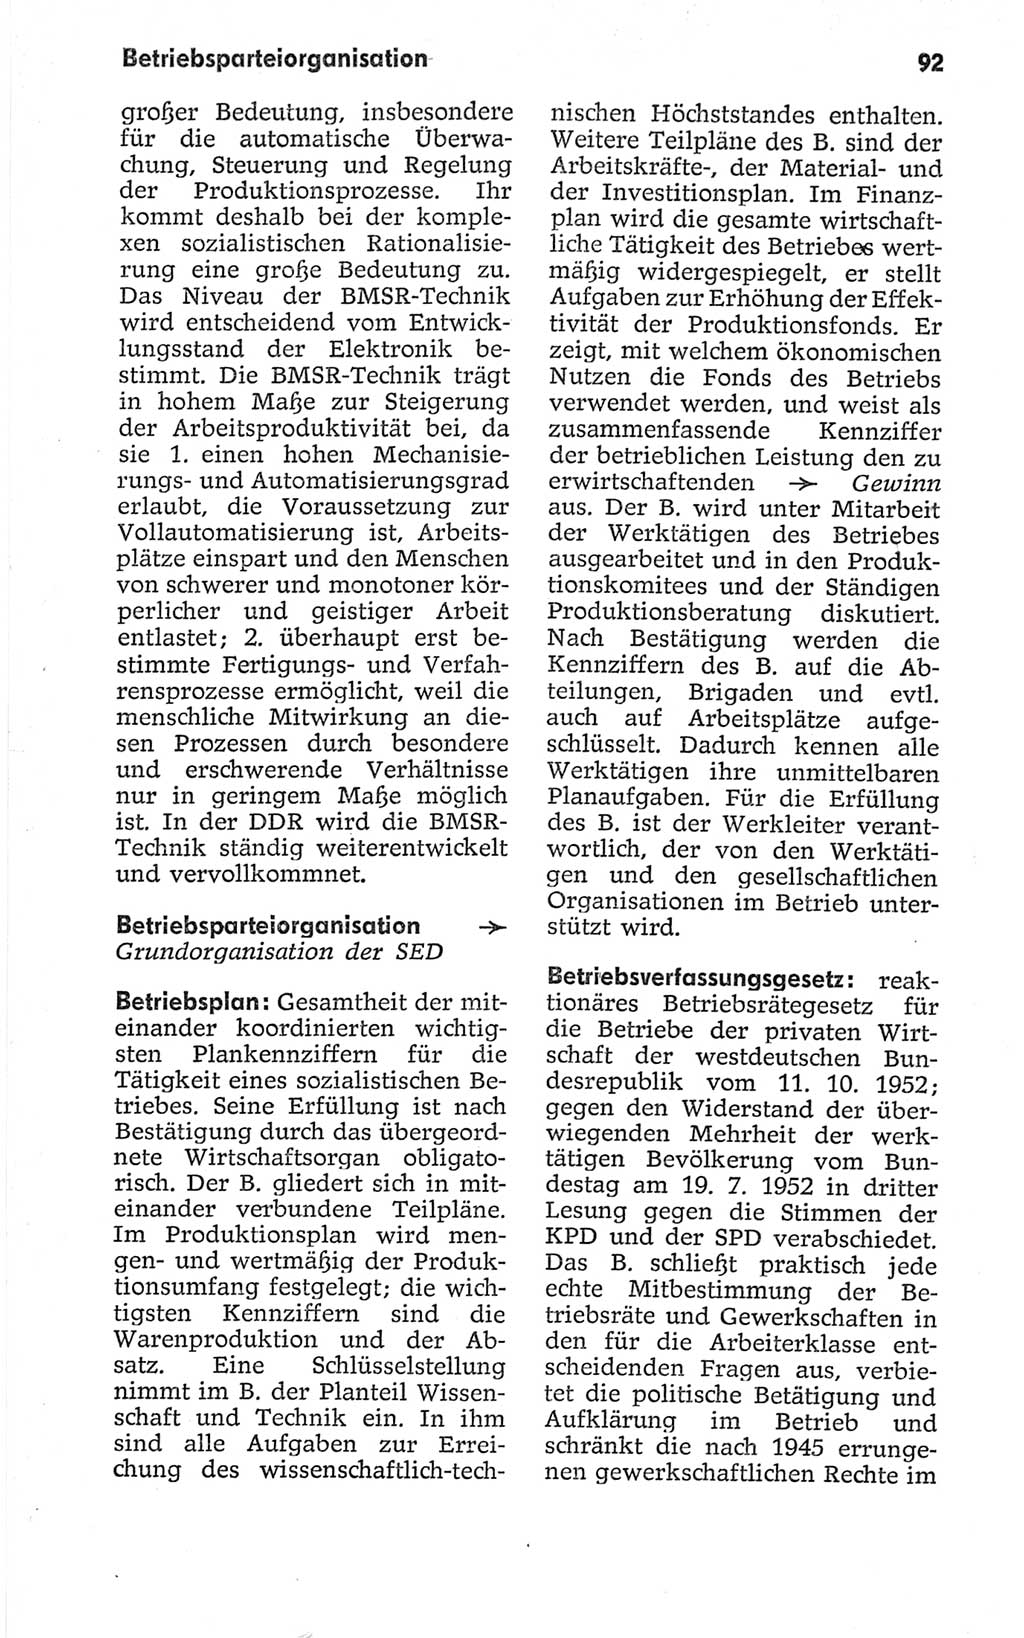 Kleines politisches Wörterbuch [Deutsche Demokratische Republik (DDR)] 1967, Seite 92 (Kl. pol. Wb. DDR 1967, S. 92)